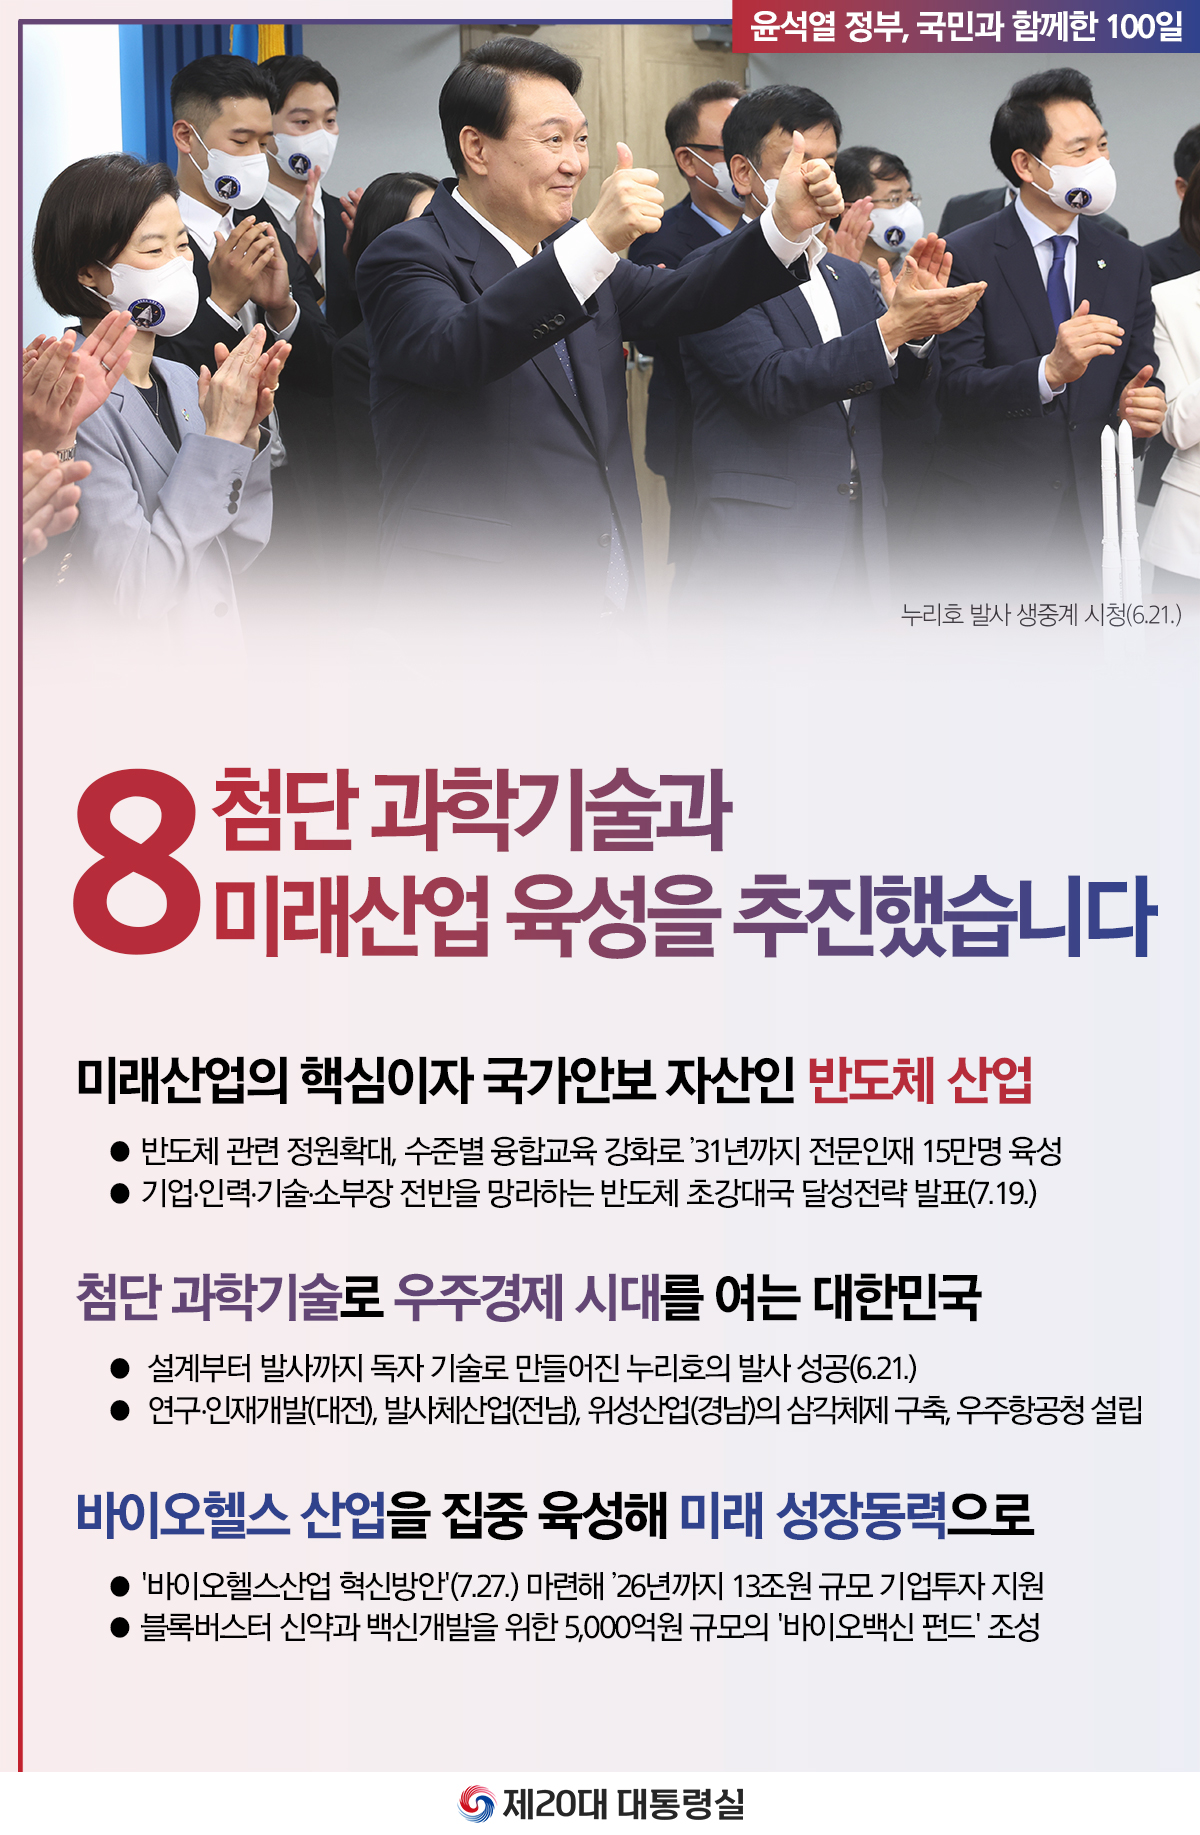 윤석열 정부의 100일, 국민과 함께한 시간들 슬라이드8